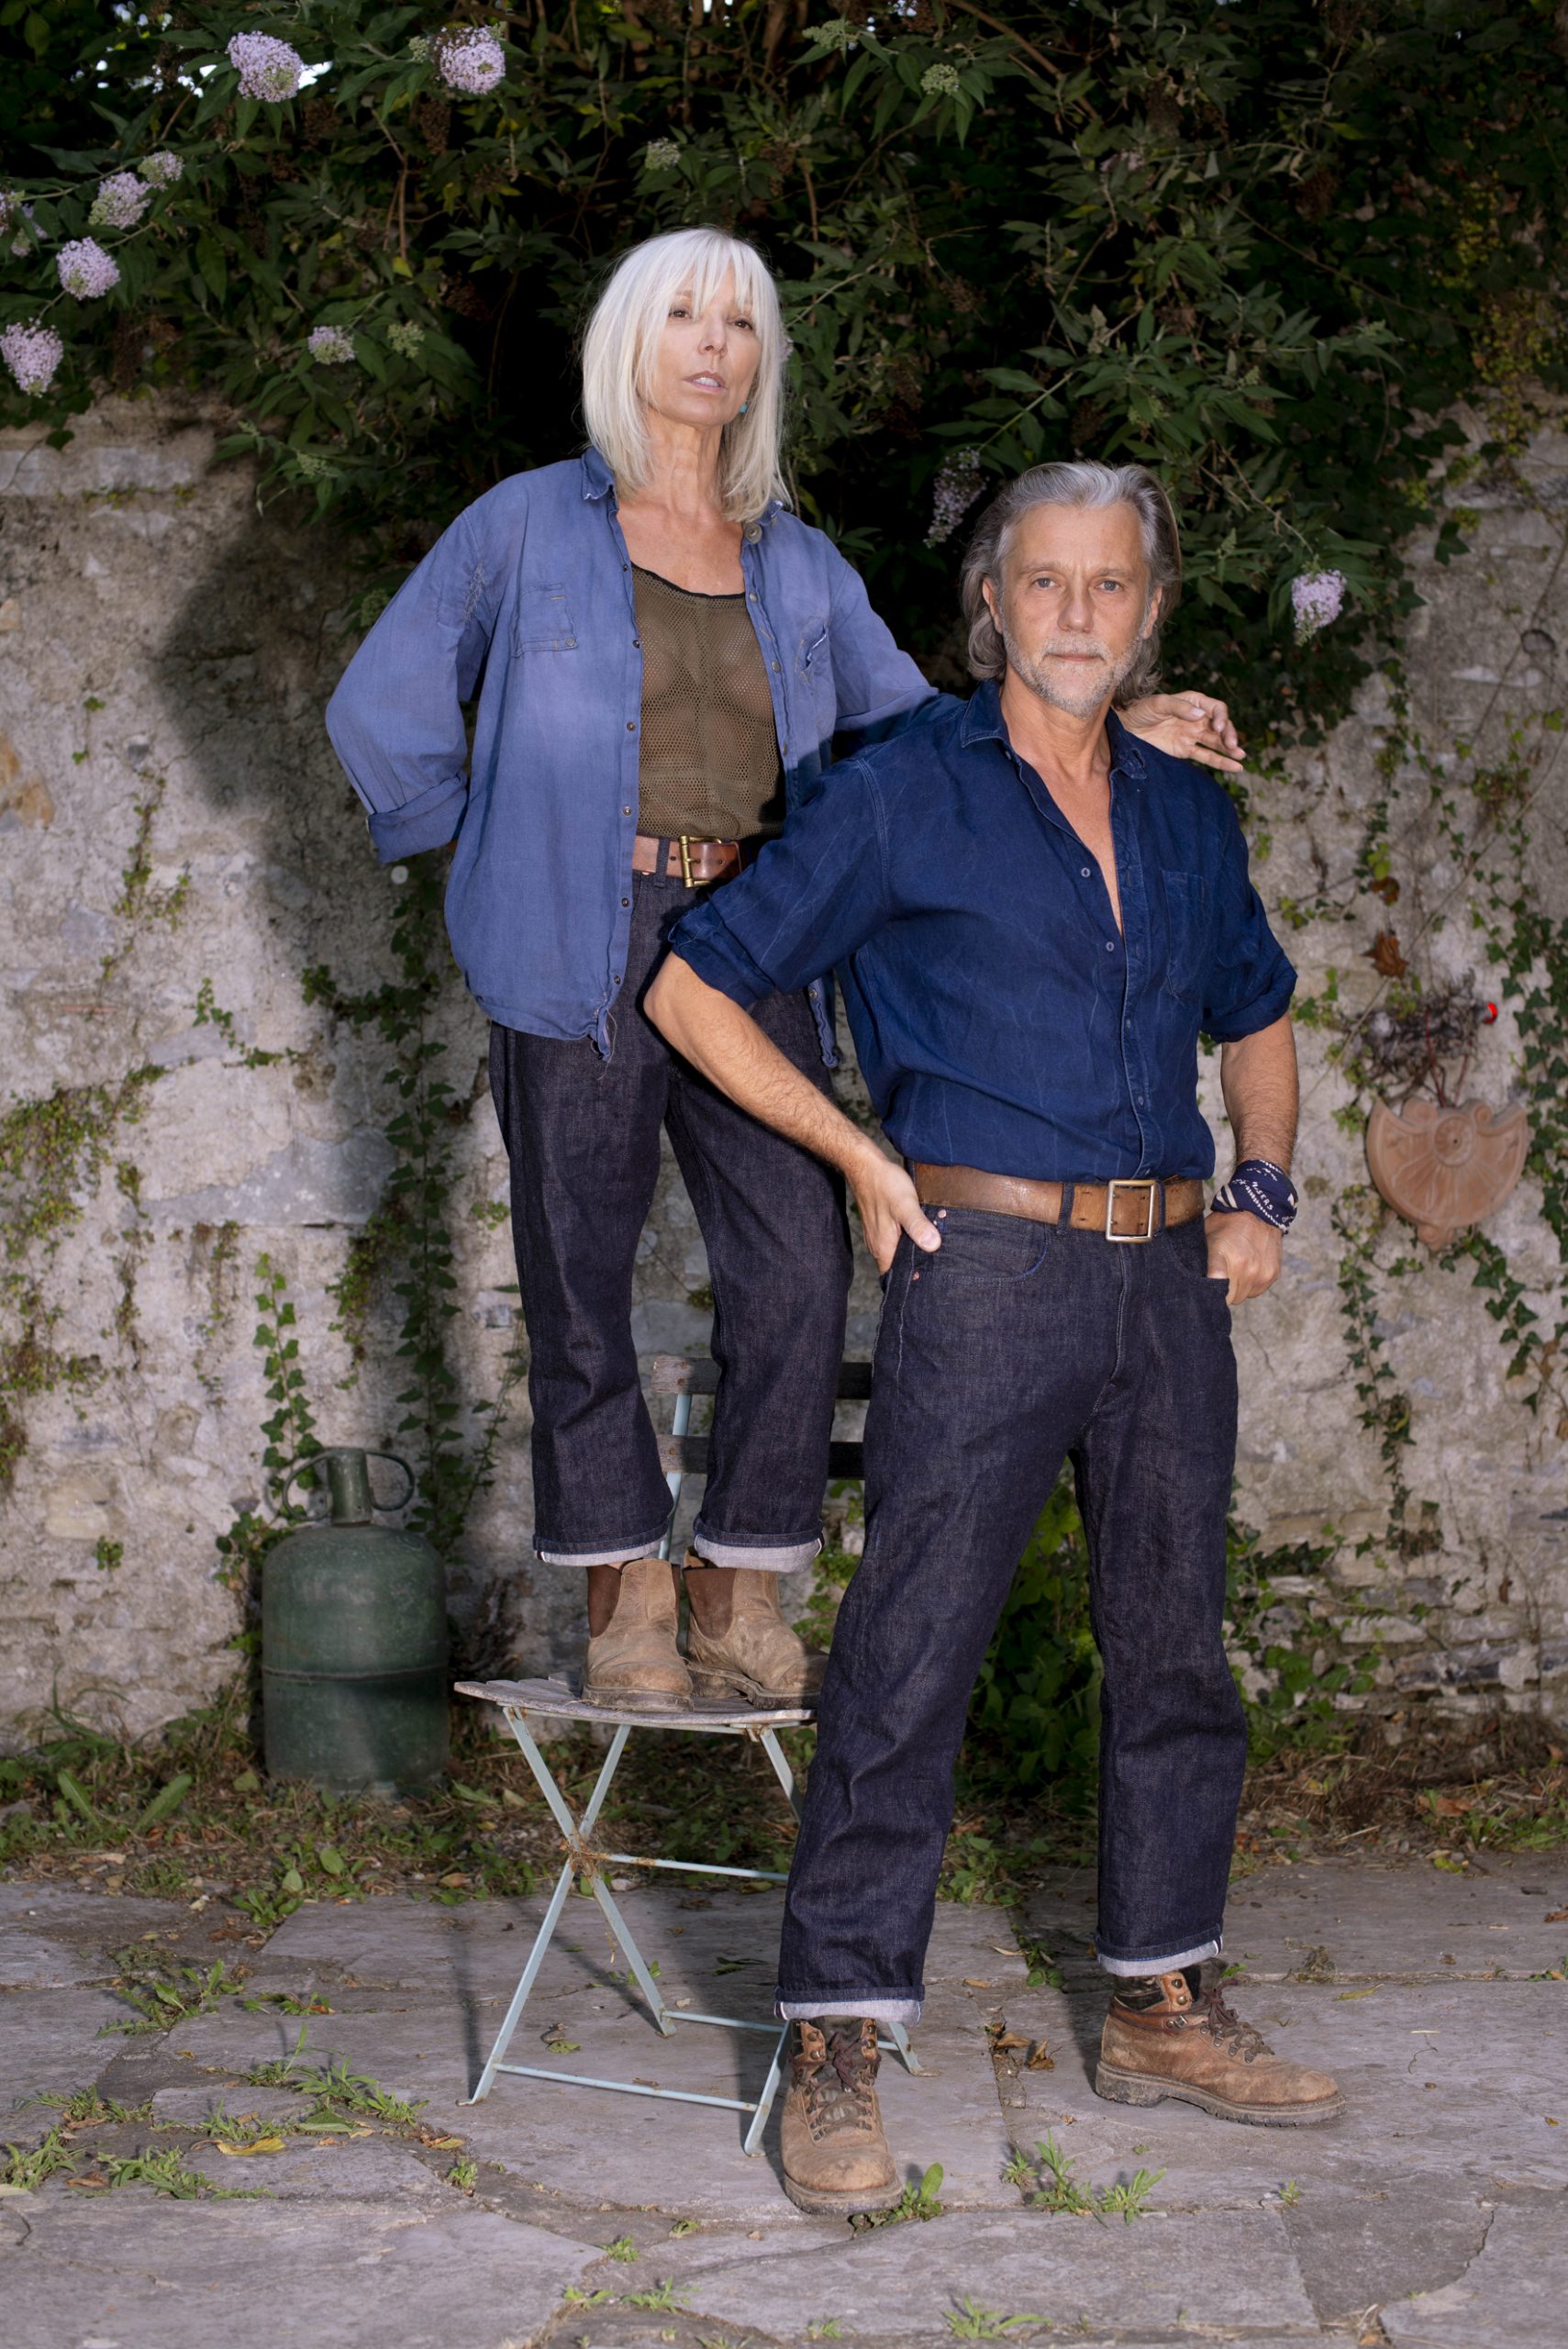 Mann mit grauem Bart und Frau mit grauen Haaren tragen Denim von Handz.